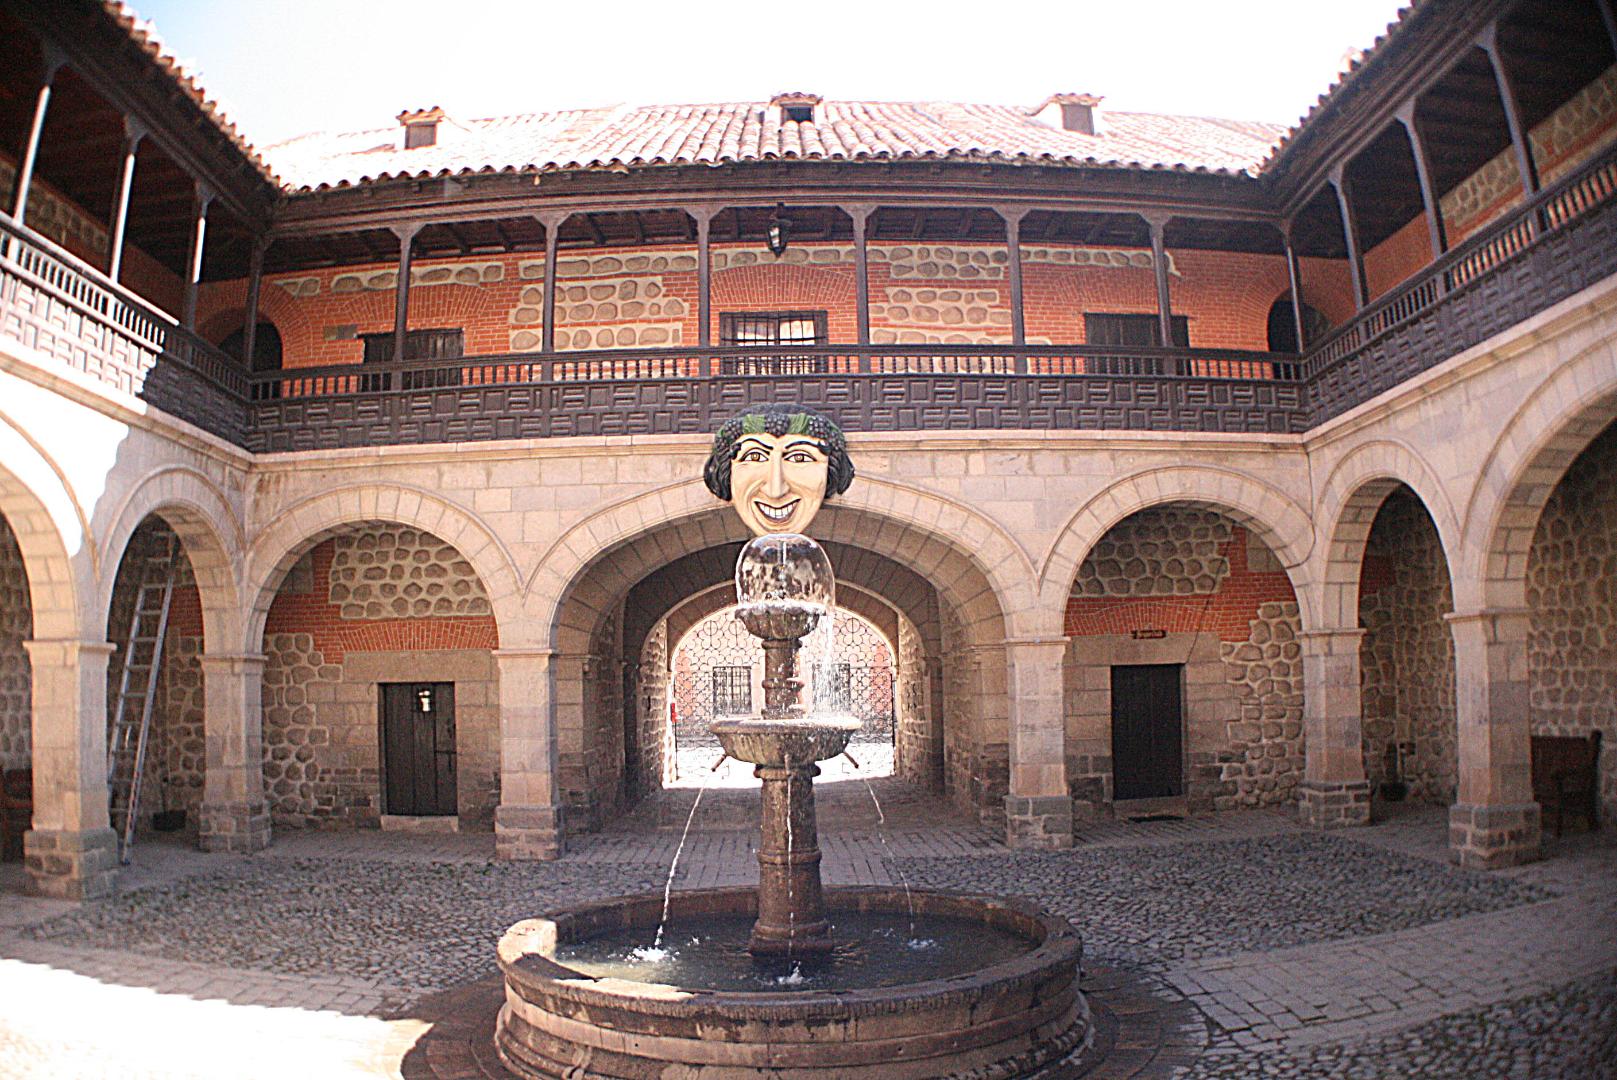 Ciudad de Potosí